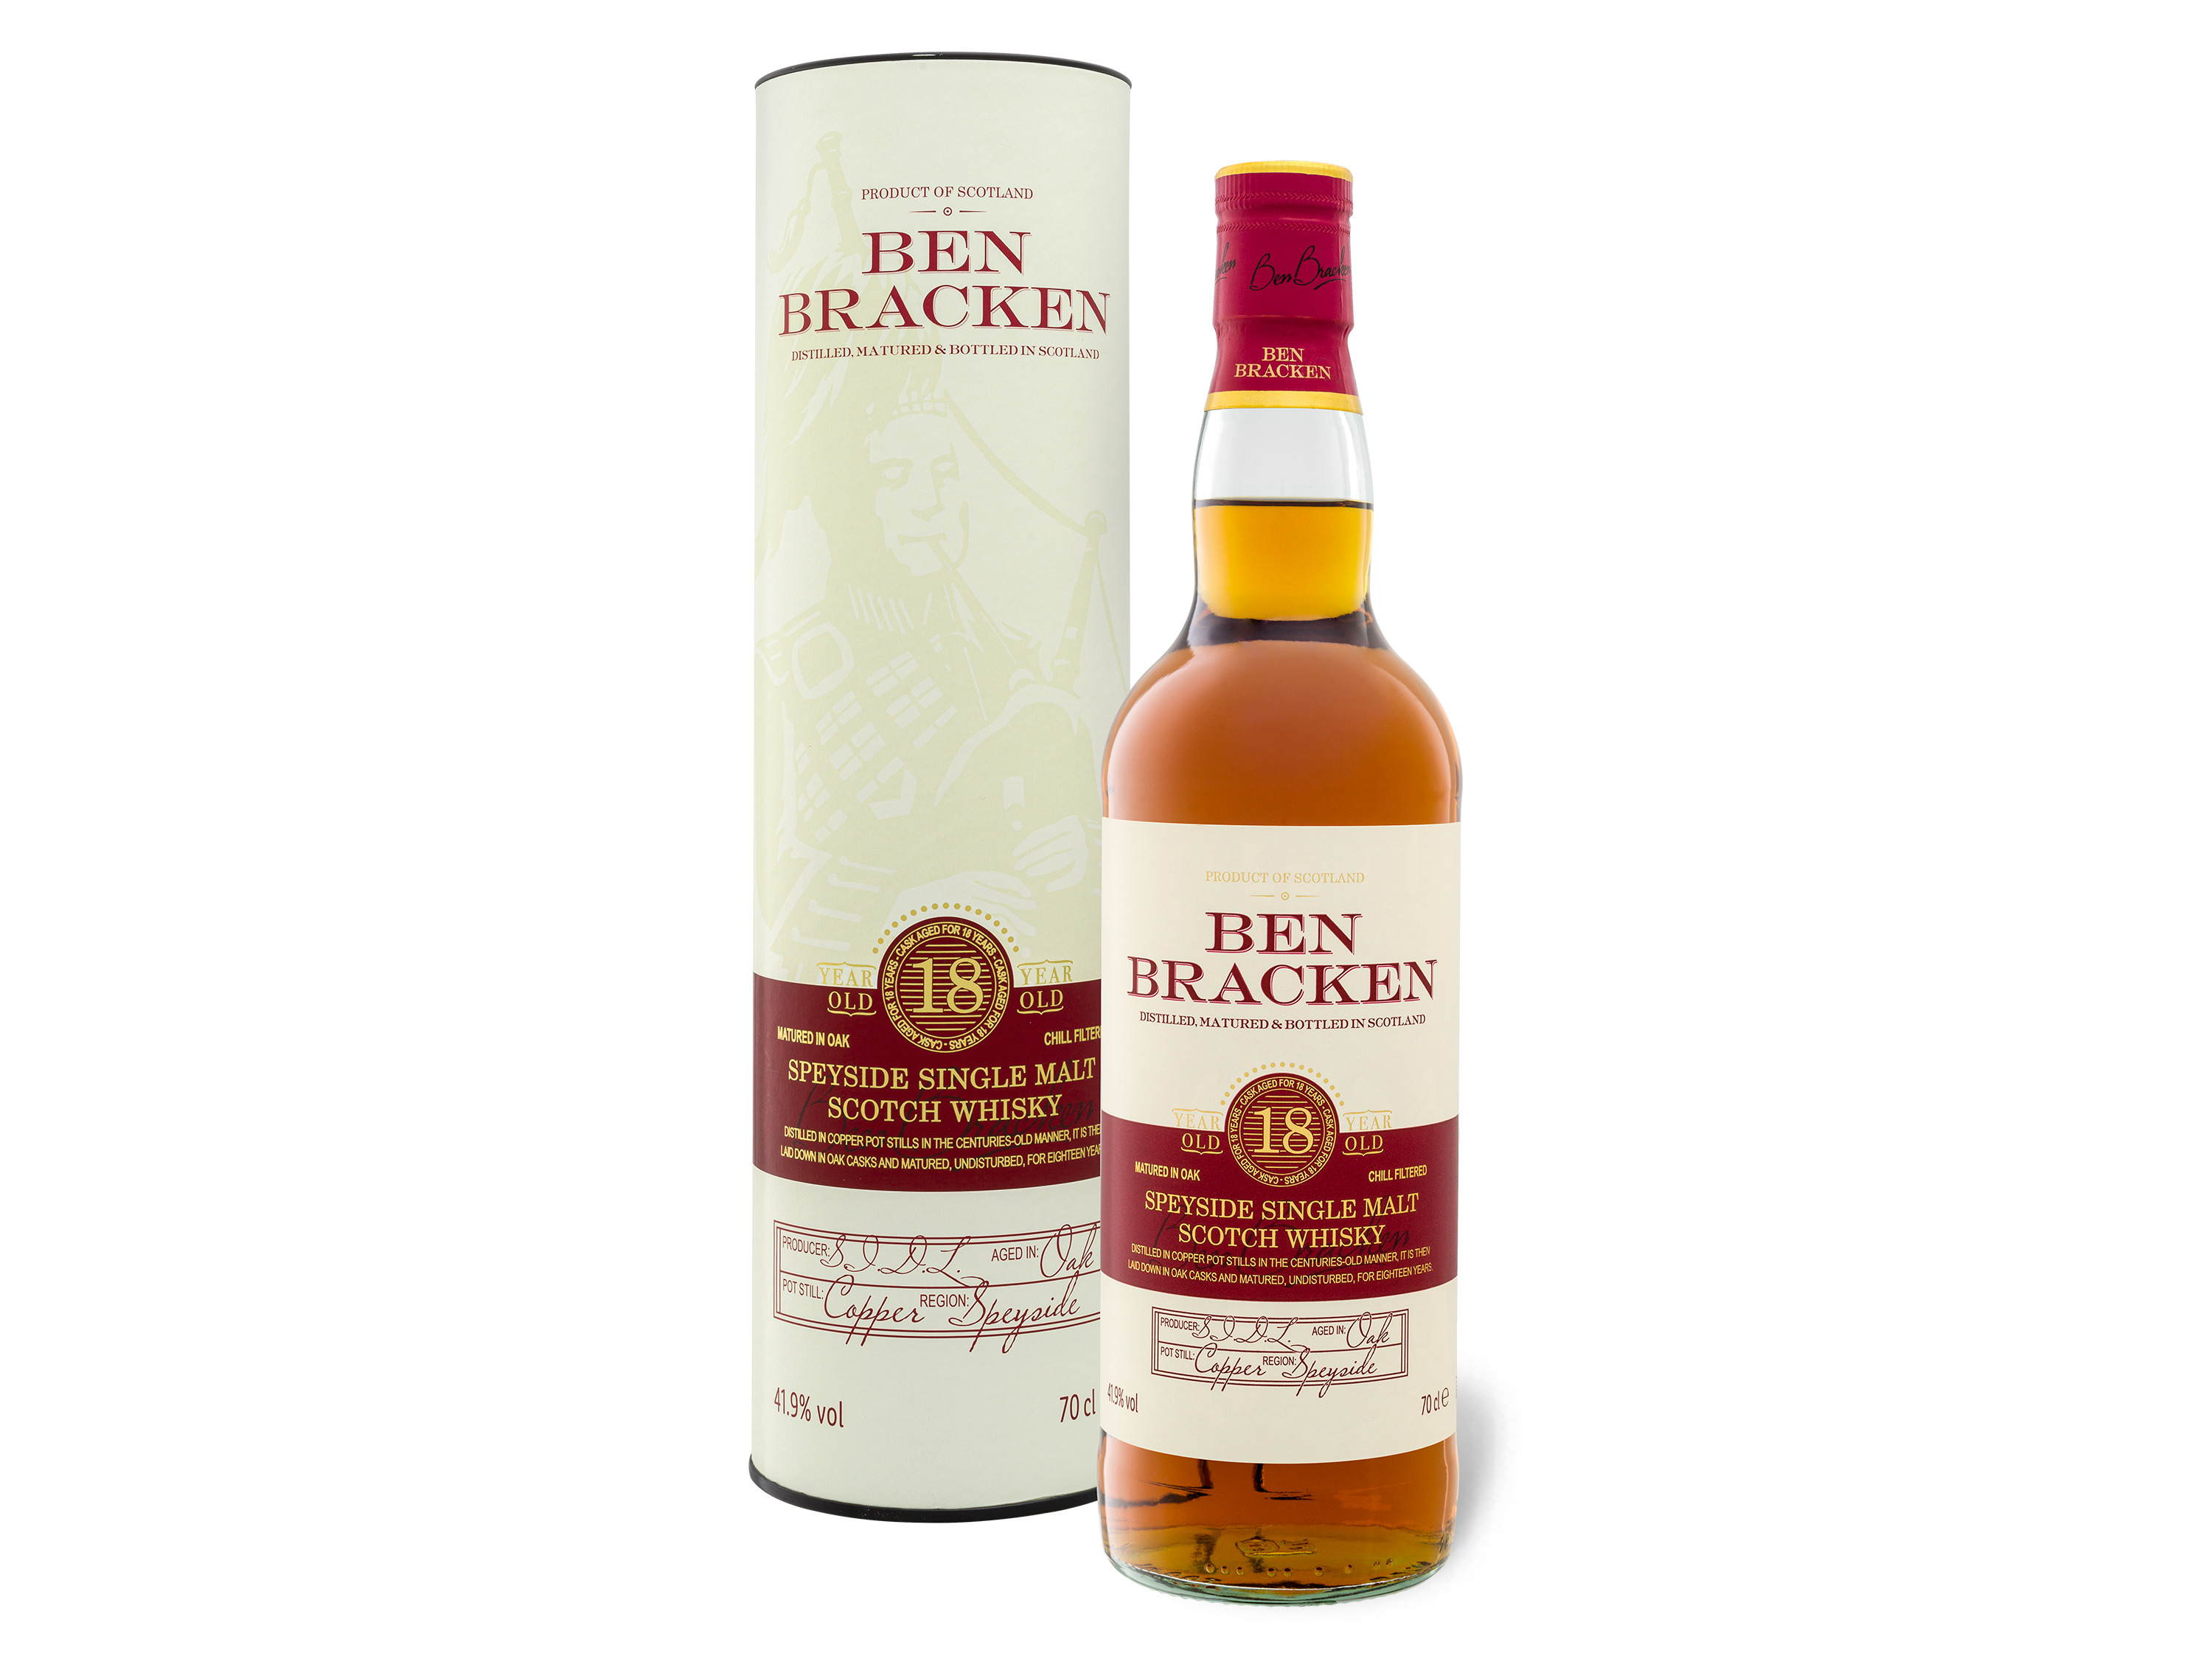 Ben Bracken Speyside Single Malt Scotch Whisky 18 Jahre 41,9% Vol